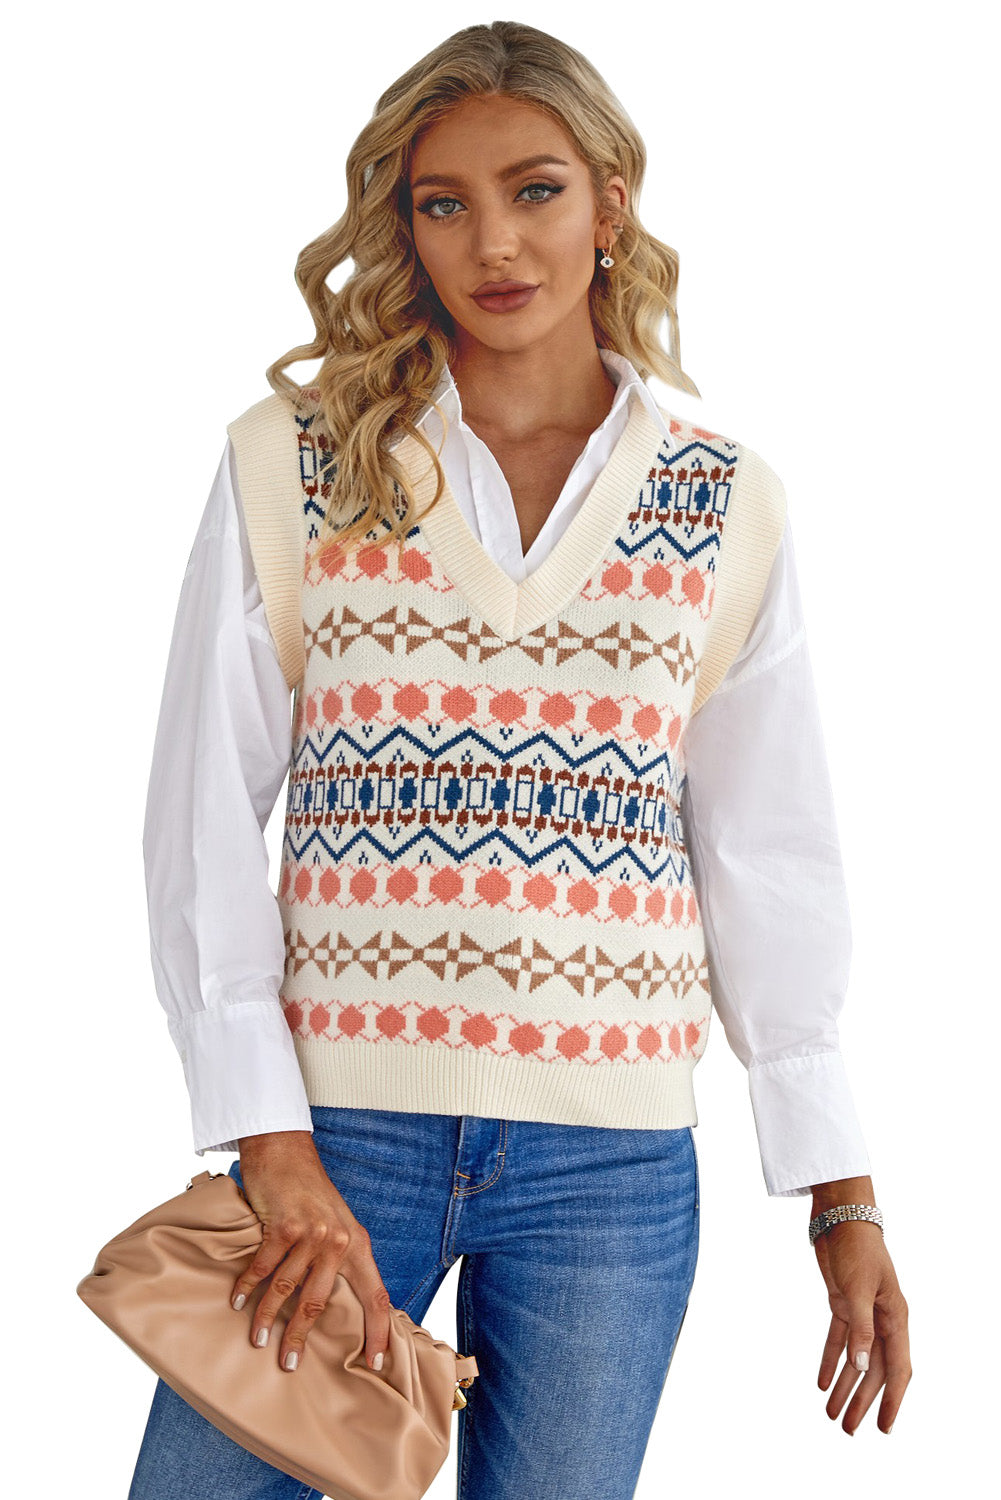 White Tribal Print V Neck Knitted Sweater Vest